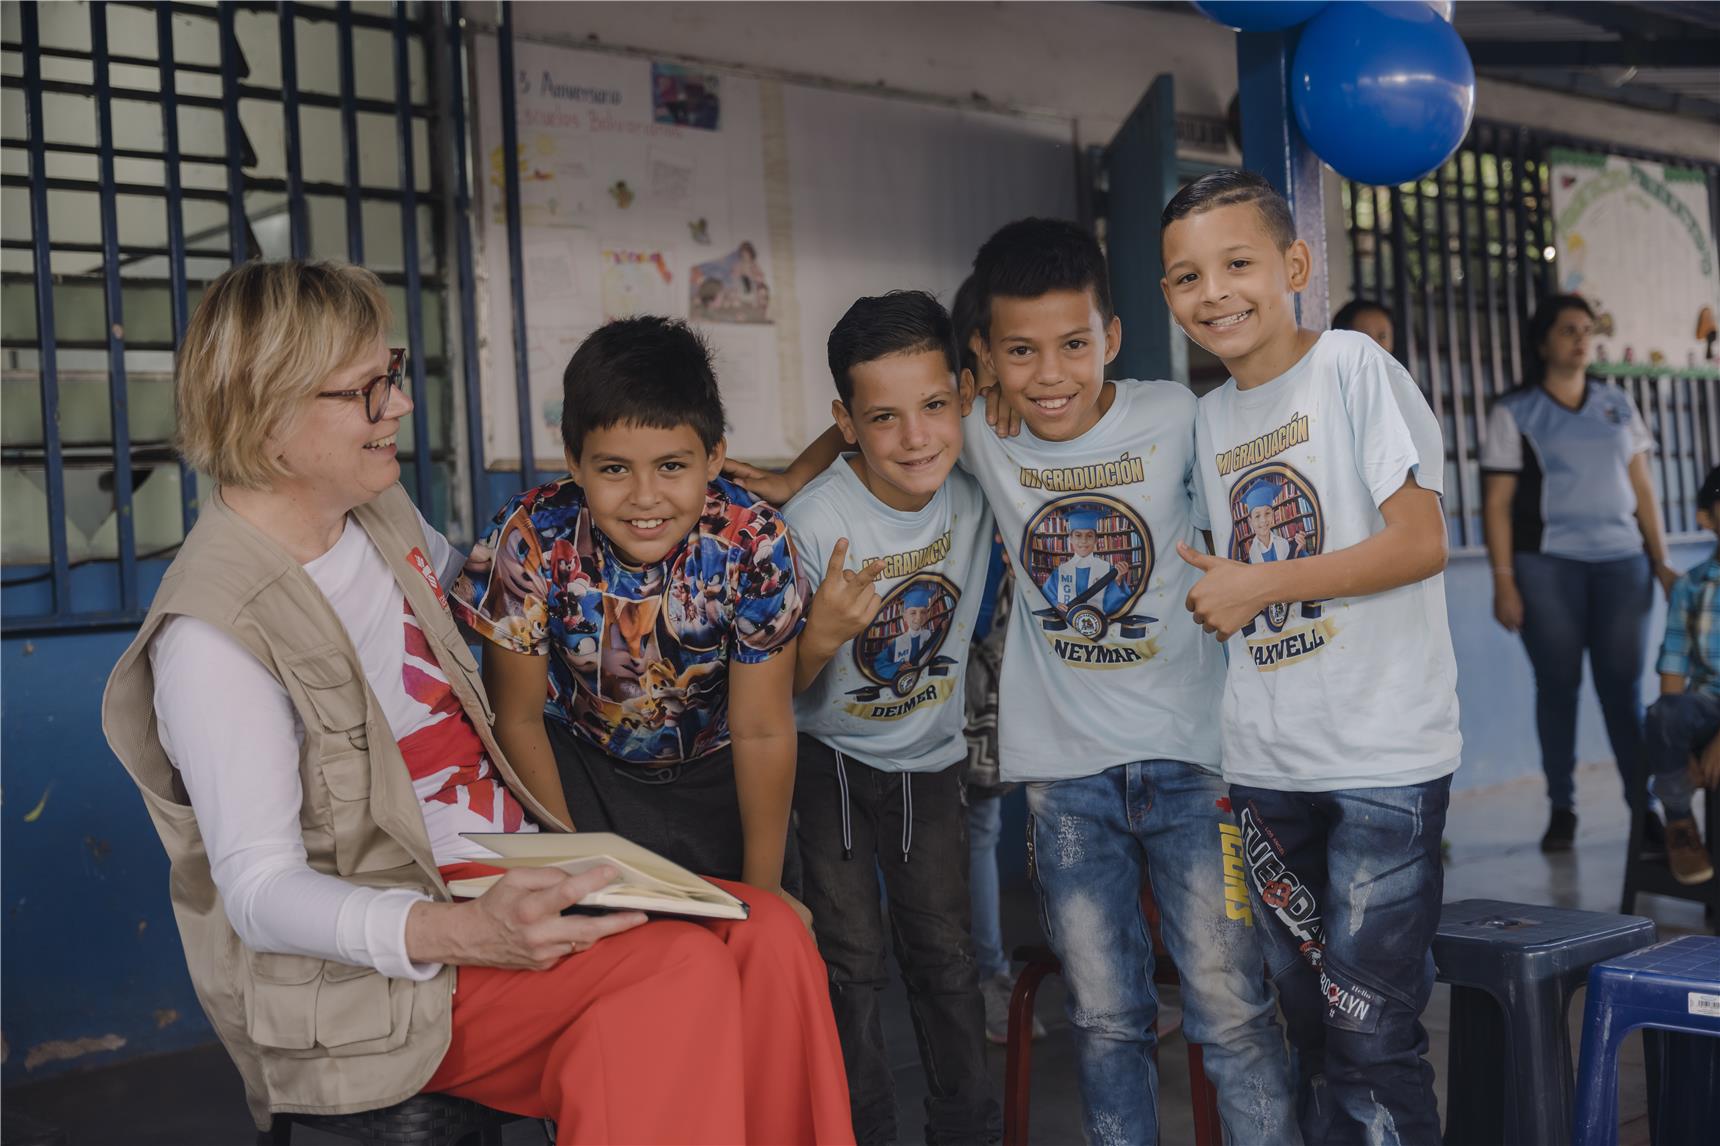 die Caritaspräsidentin zu Besuch in einer Schule in Venezuela